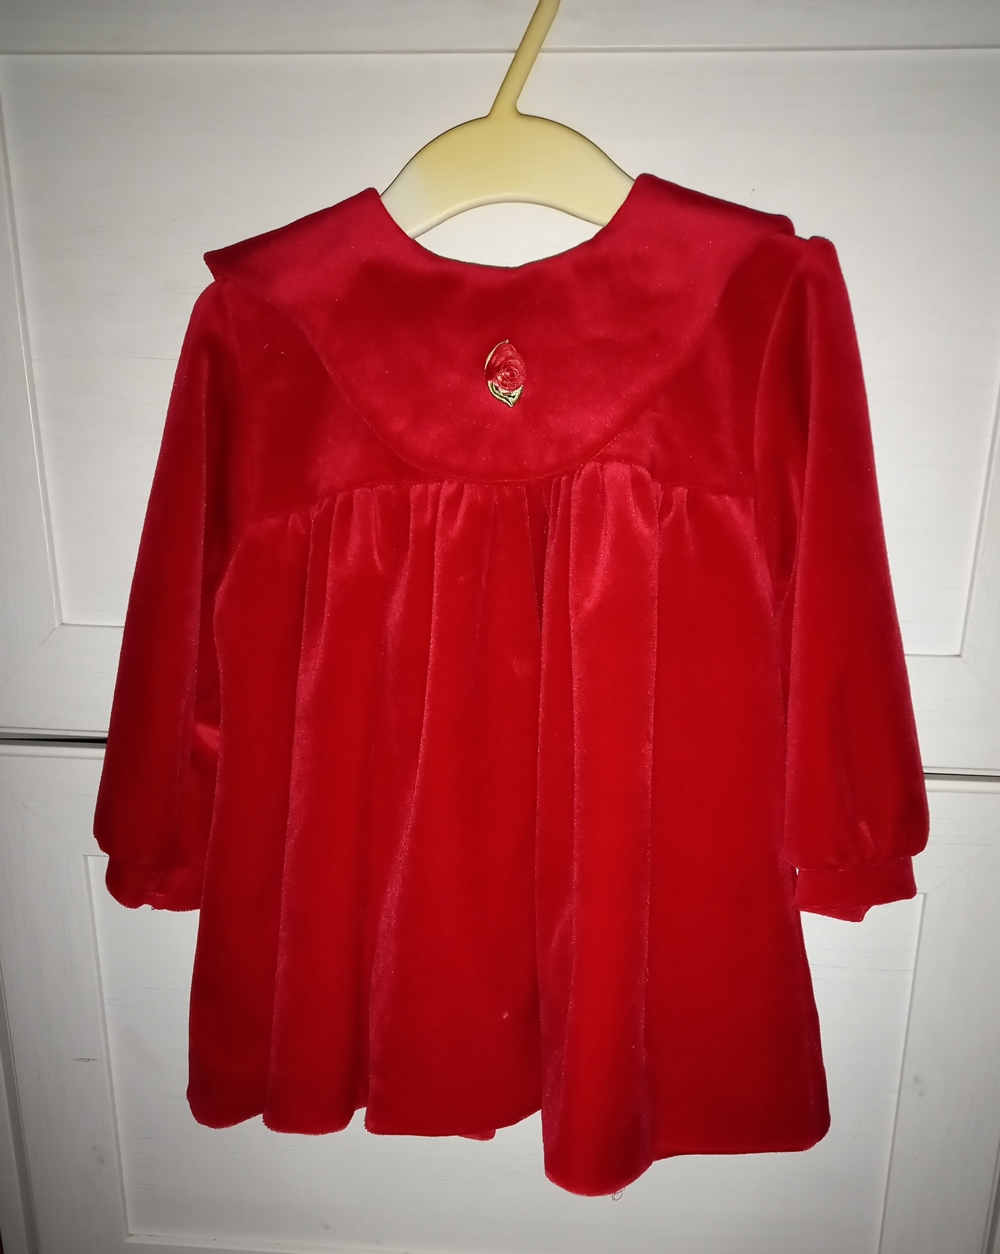 Samt Kleid Gr.92/18-24 Monate rot festlich sehr guter Zustand mit Unterrock,